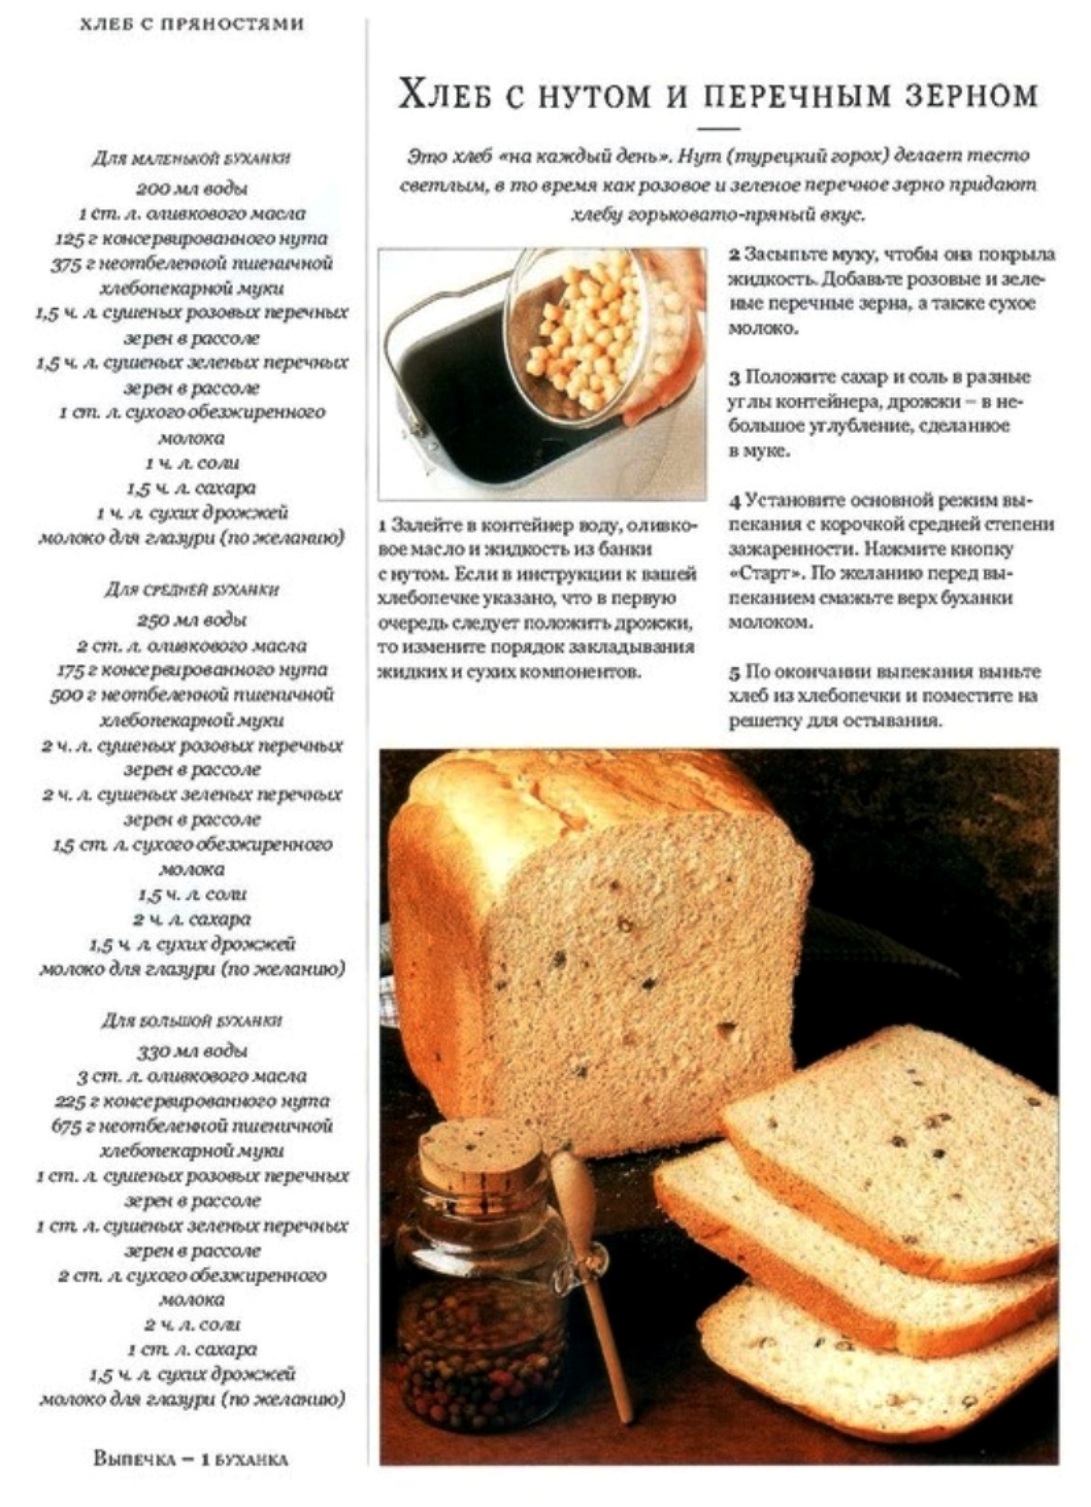 1000 рецепты хлеба. Рецепт хлеба. Выпечка хлеба в хлебопечке-рецепты. Хлеб из хлебопечки. Рецепт хлеба в хлебопечке.